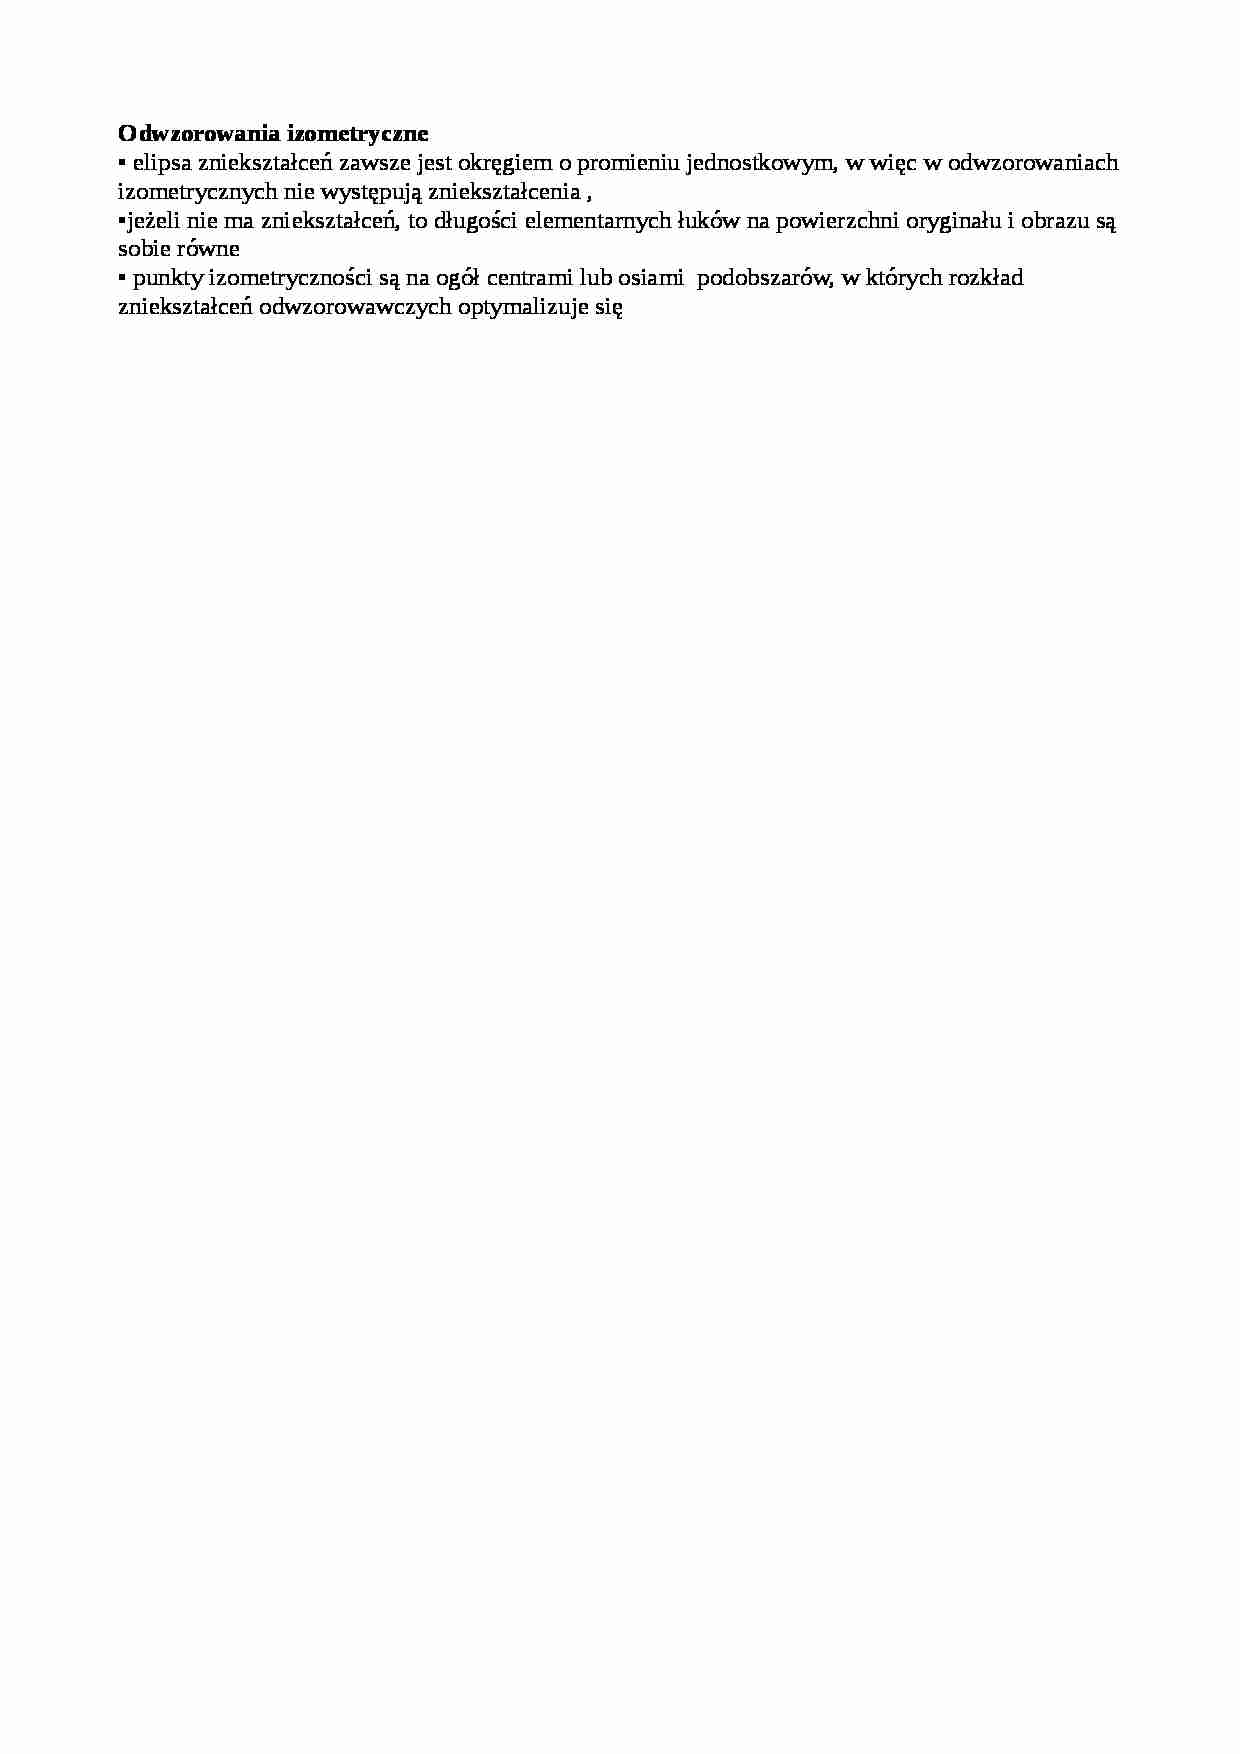 Odwzorowania izometryczne-opracowanie - strona 1